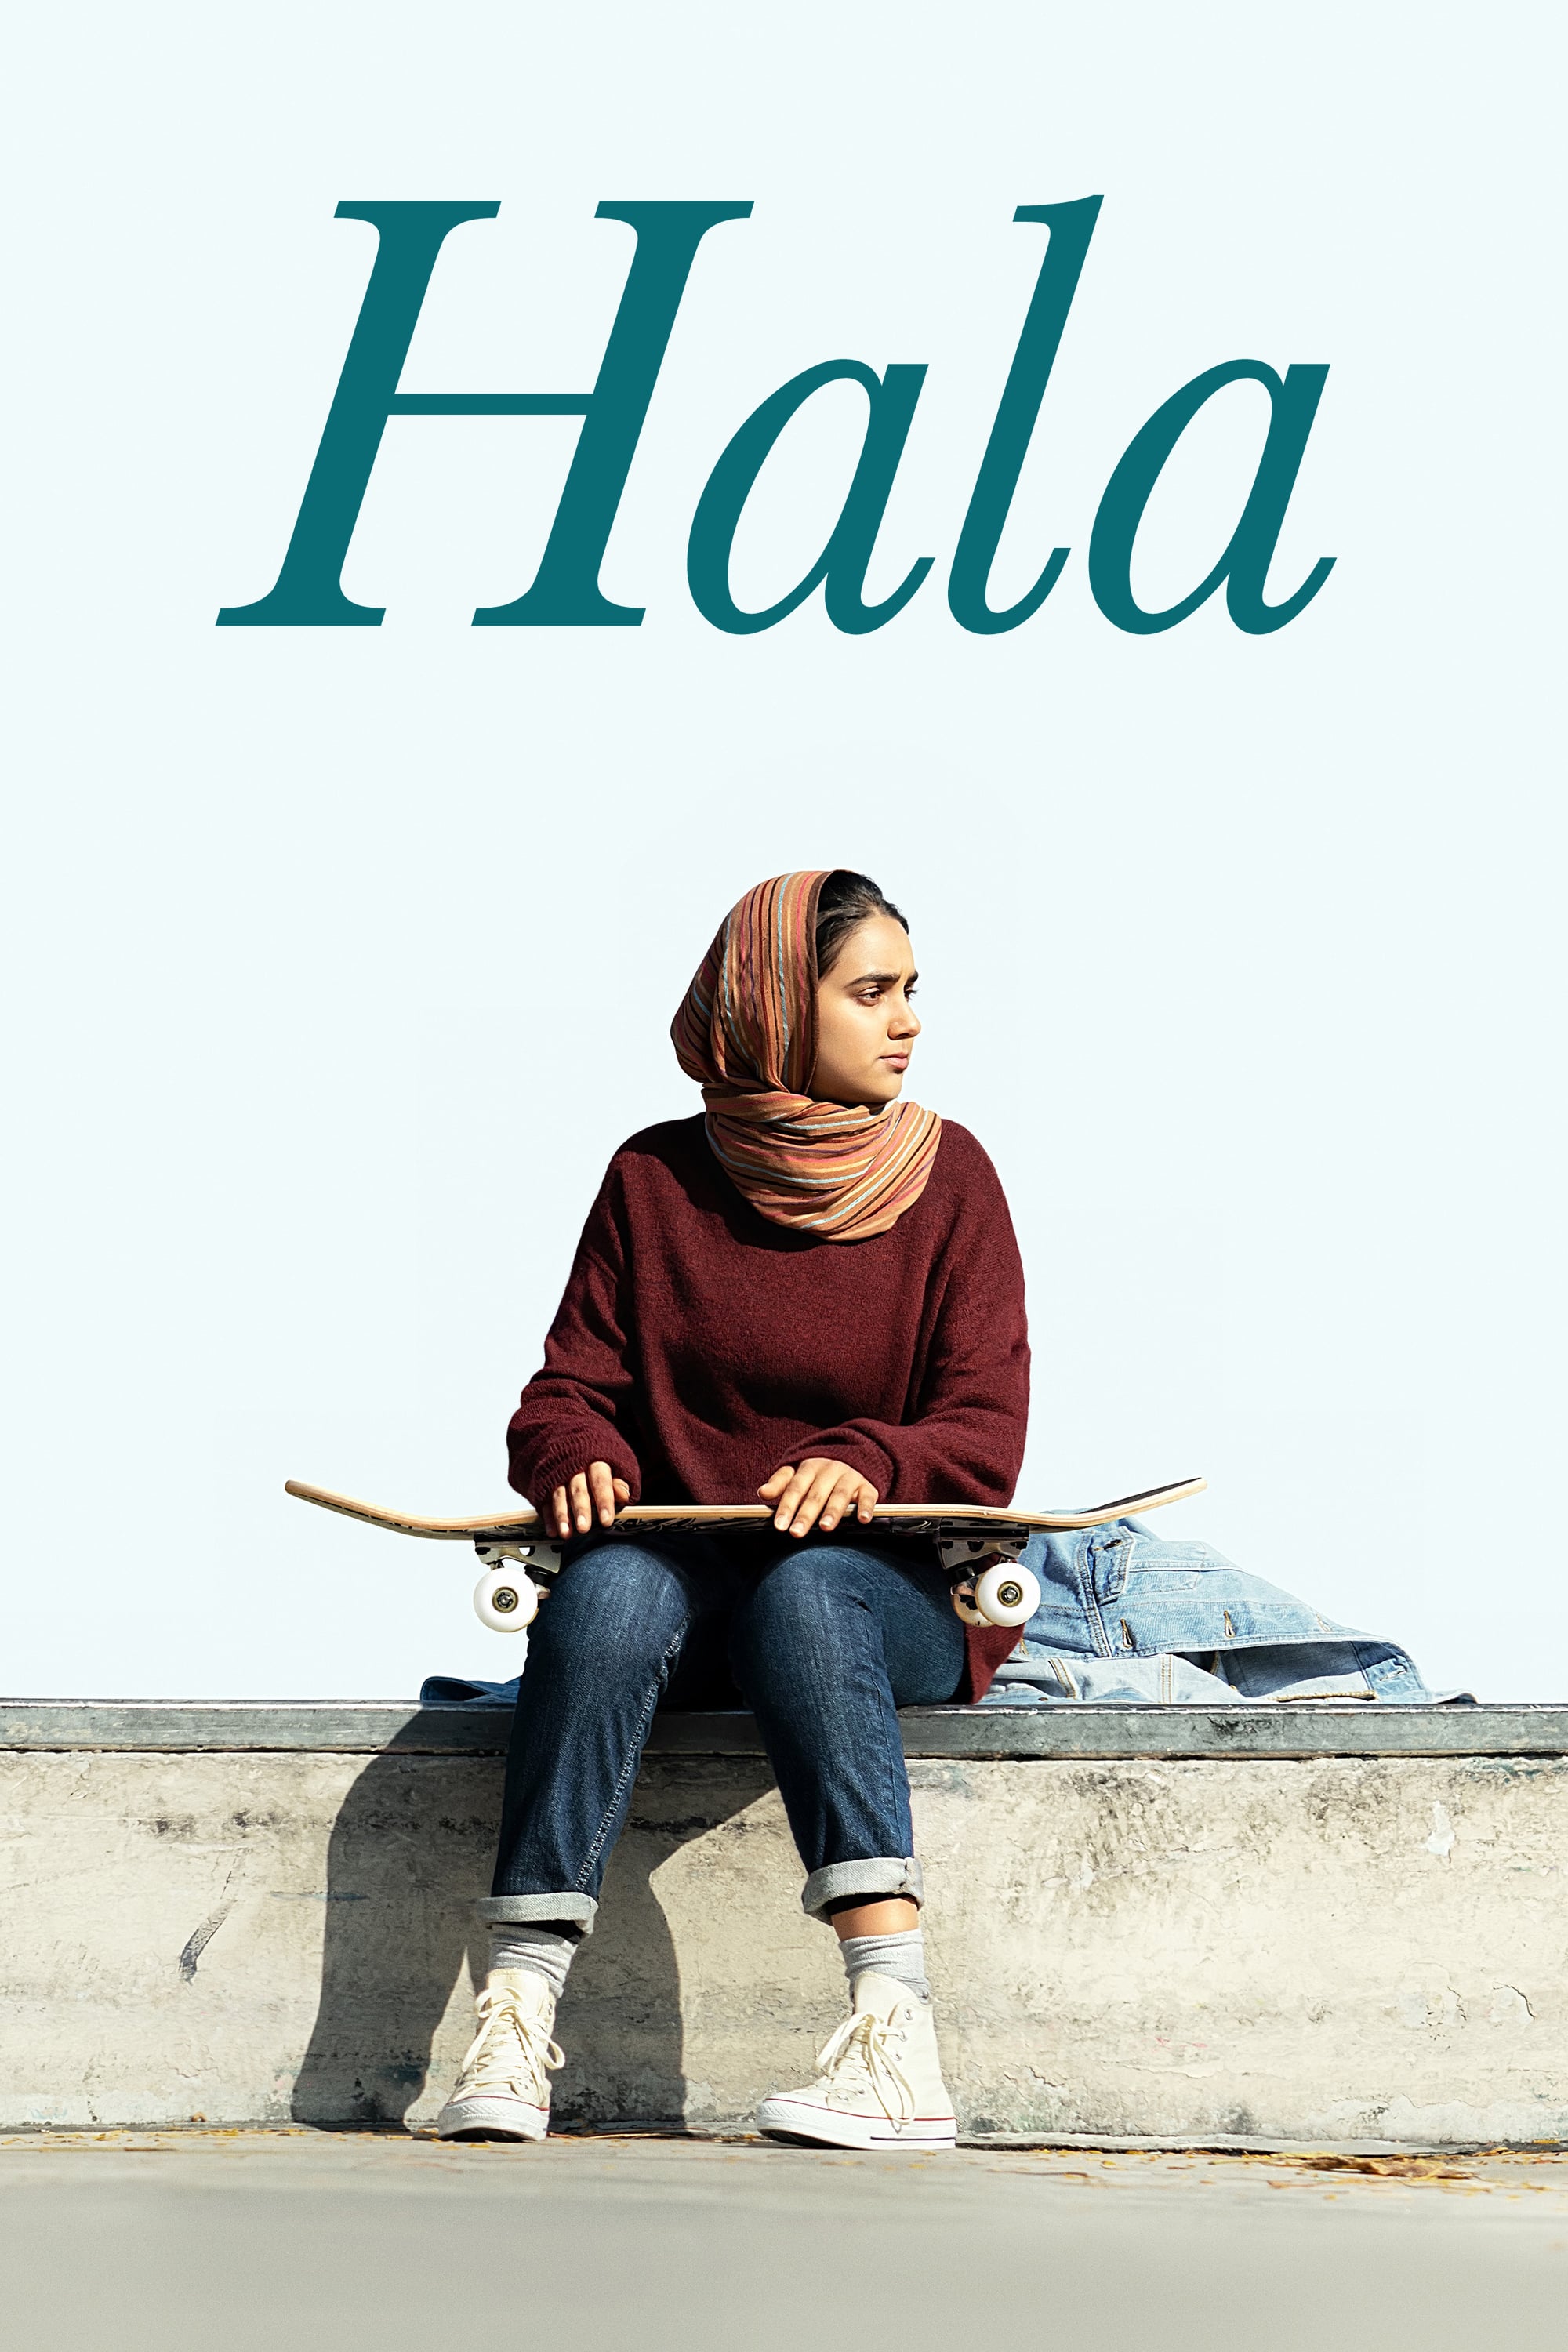 دانلود فیلم Hala 2019